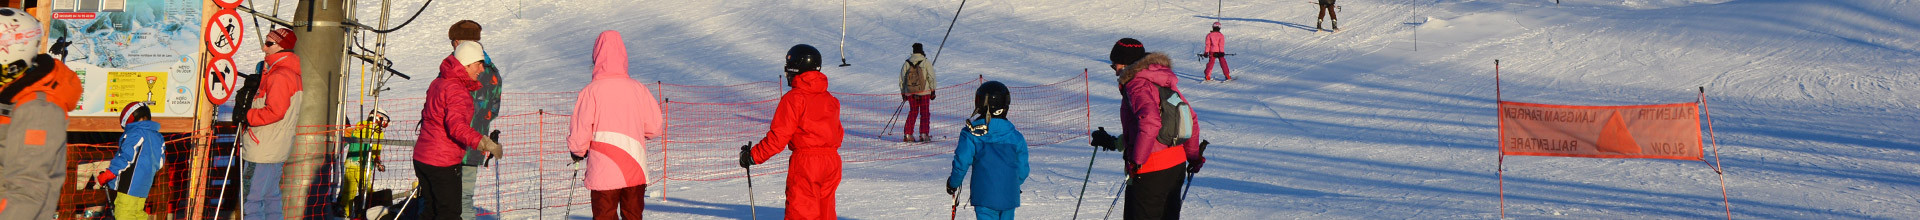 skieurs-lans-1202